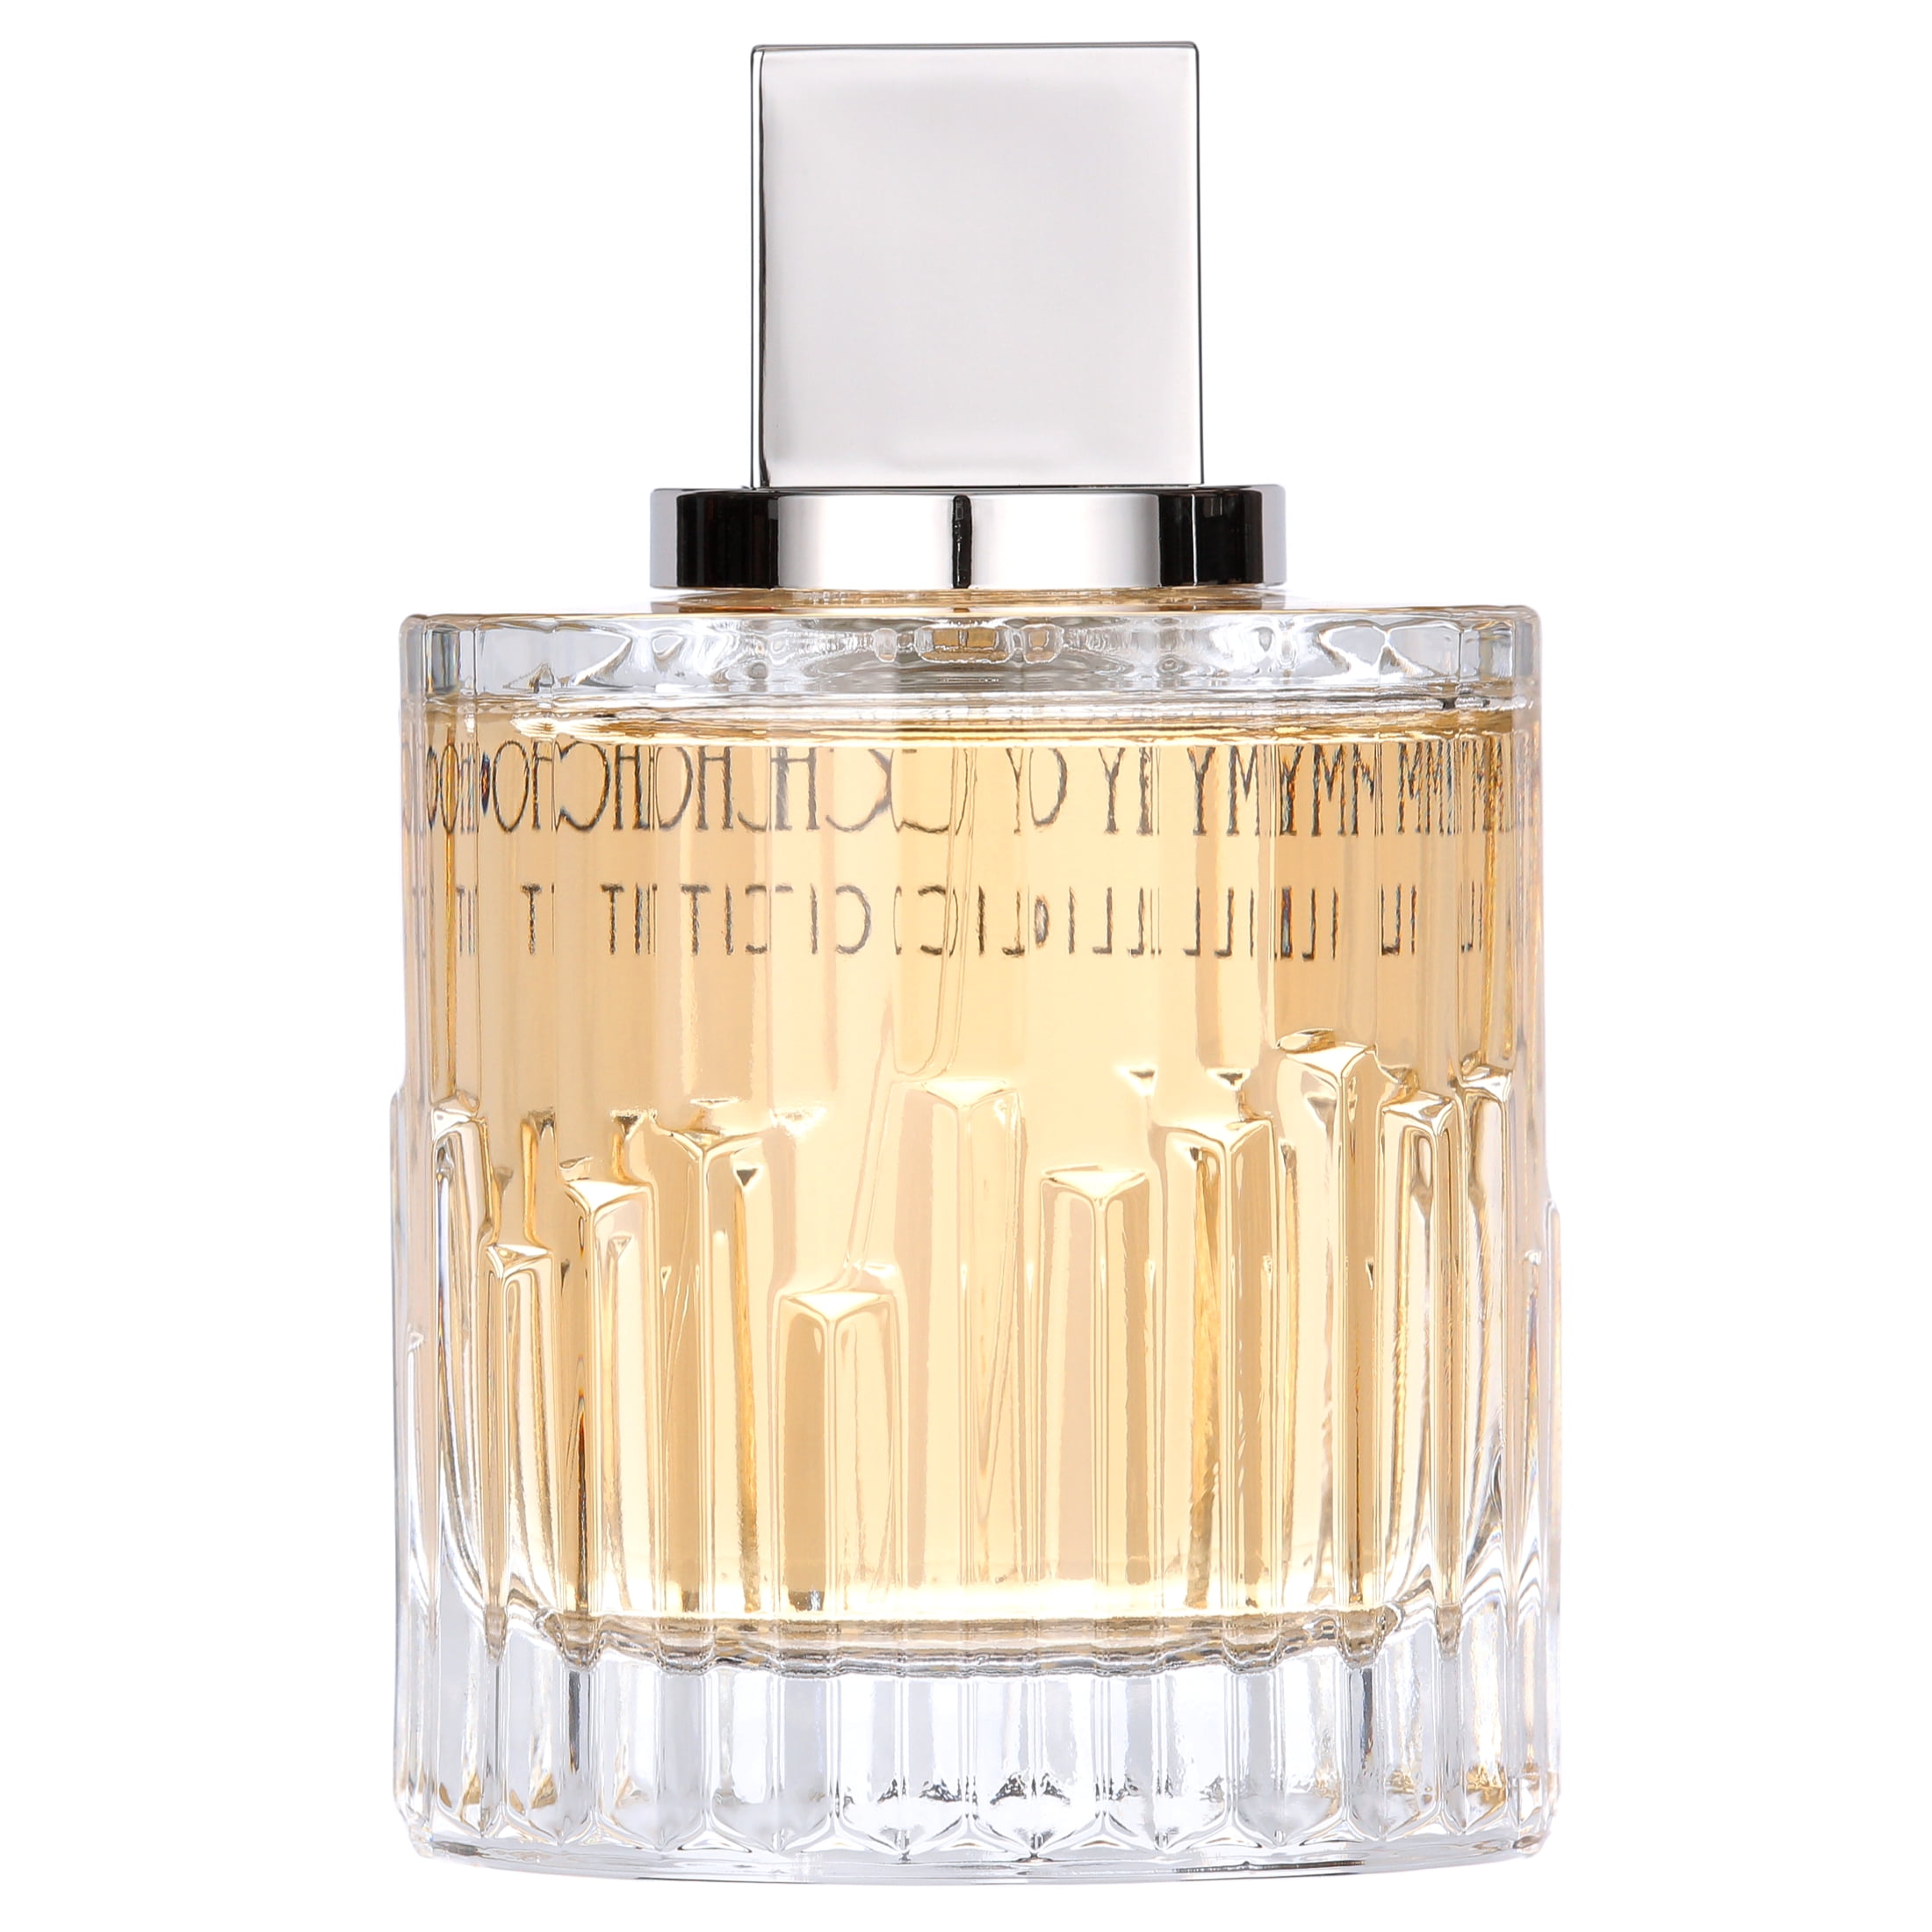 Jimmy Choo Illicit Eau de Parfum, Perfume For Women, 3.3 oz